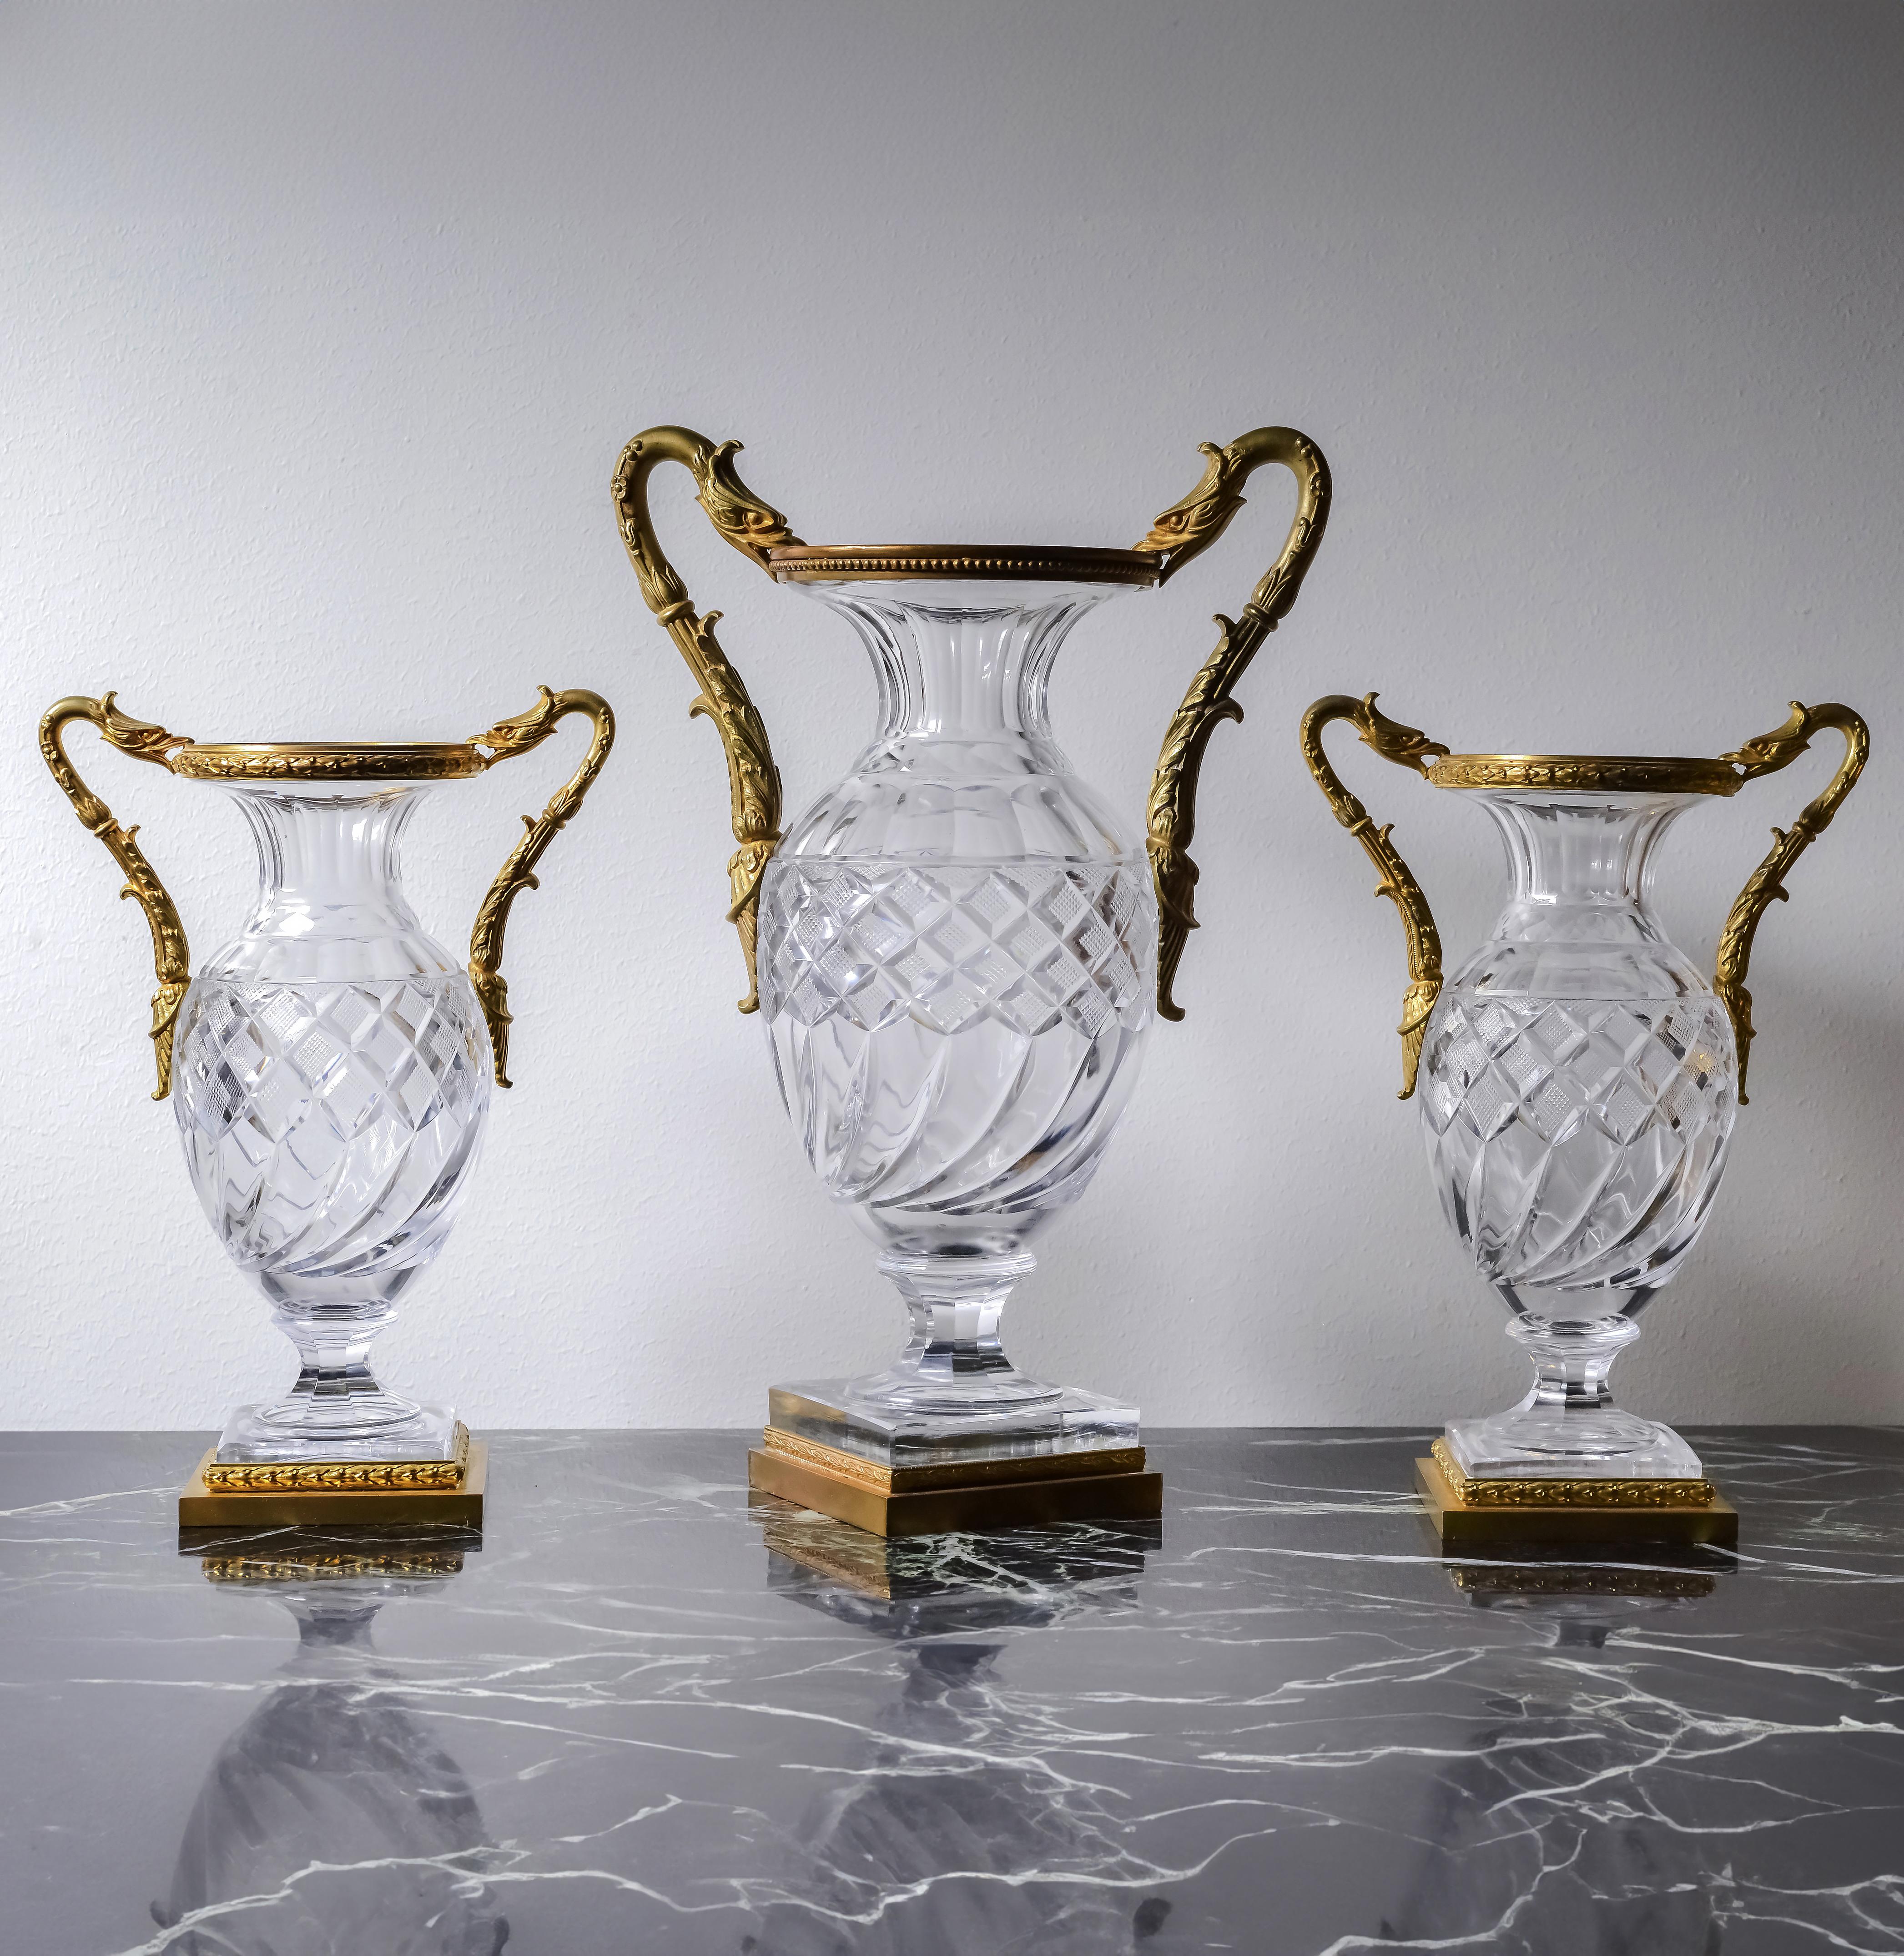 Rare verre en cristal de type Baccarat encadré de fines montures en bronze doré de feuillages à la base et de griffons stylisés en guise de poignées. A noter un motif asymétrique inhabituel sur le vase central. Il s'agit certainement d'un modèle de